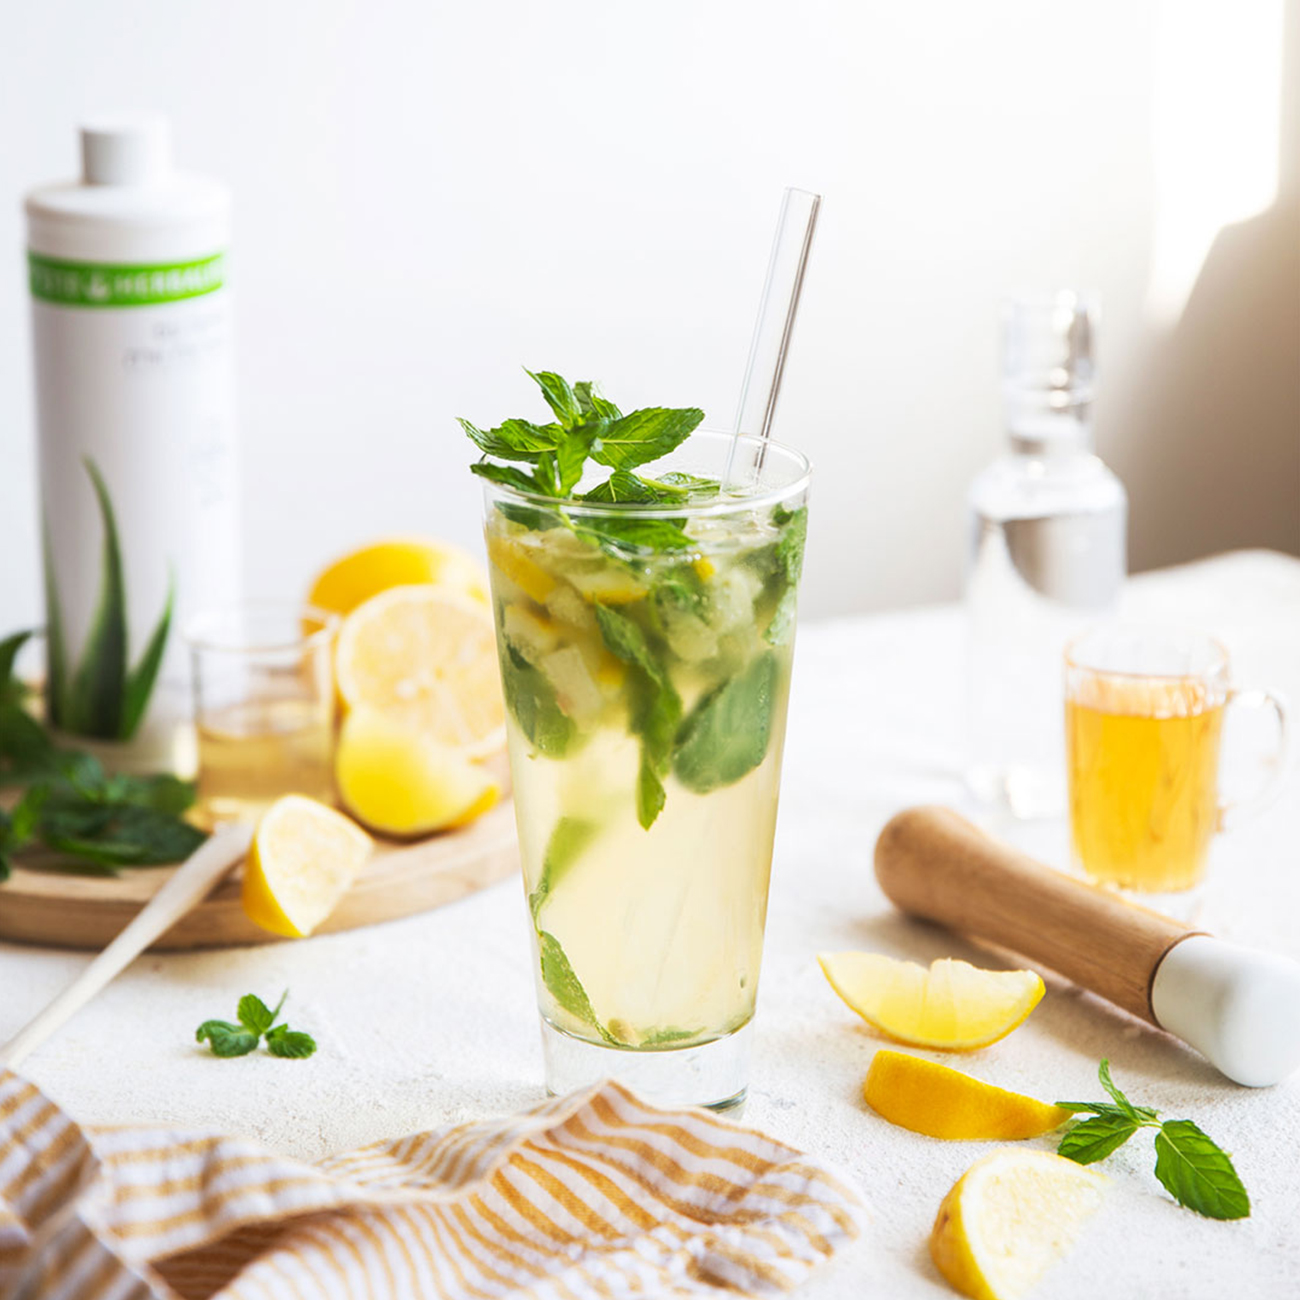 herbalife nutrition osvježavajuća čaša napitka Biljnog koncentrata aloje s dodatkom limuna i metvice.